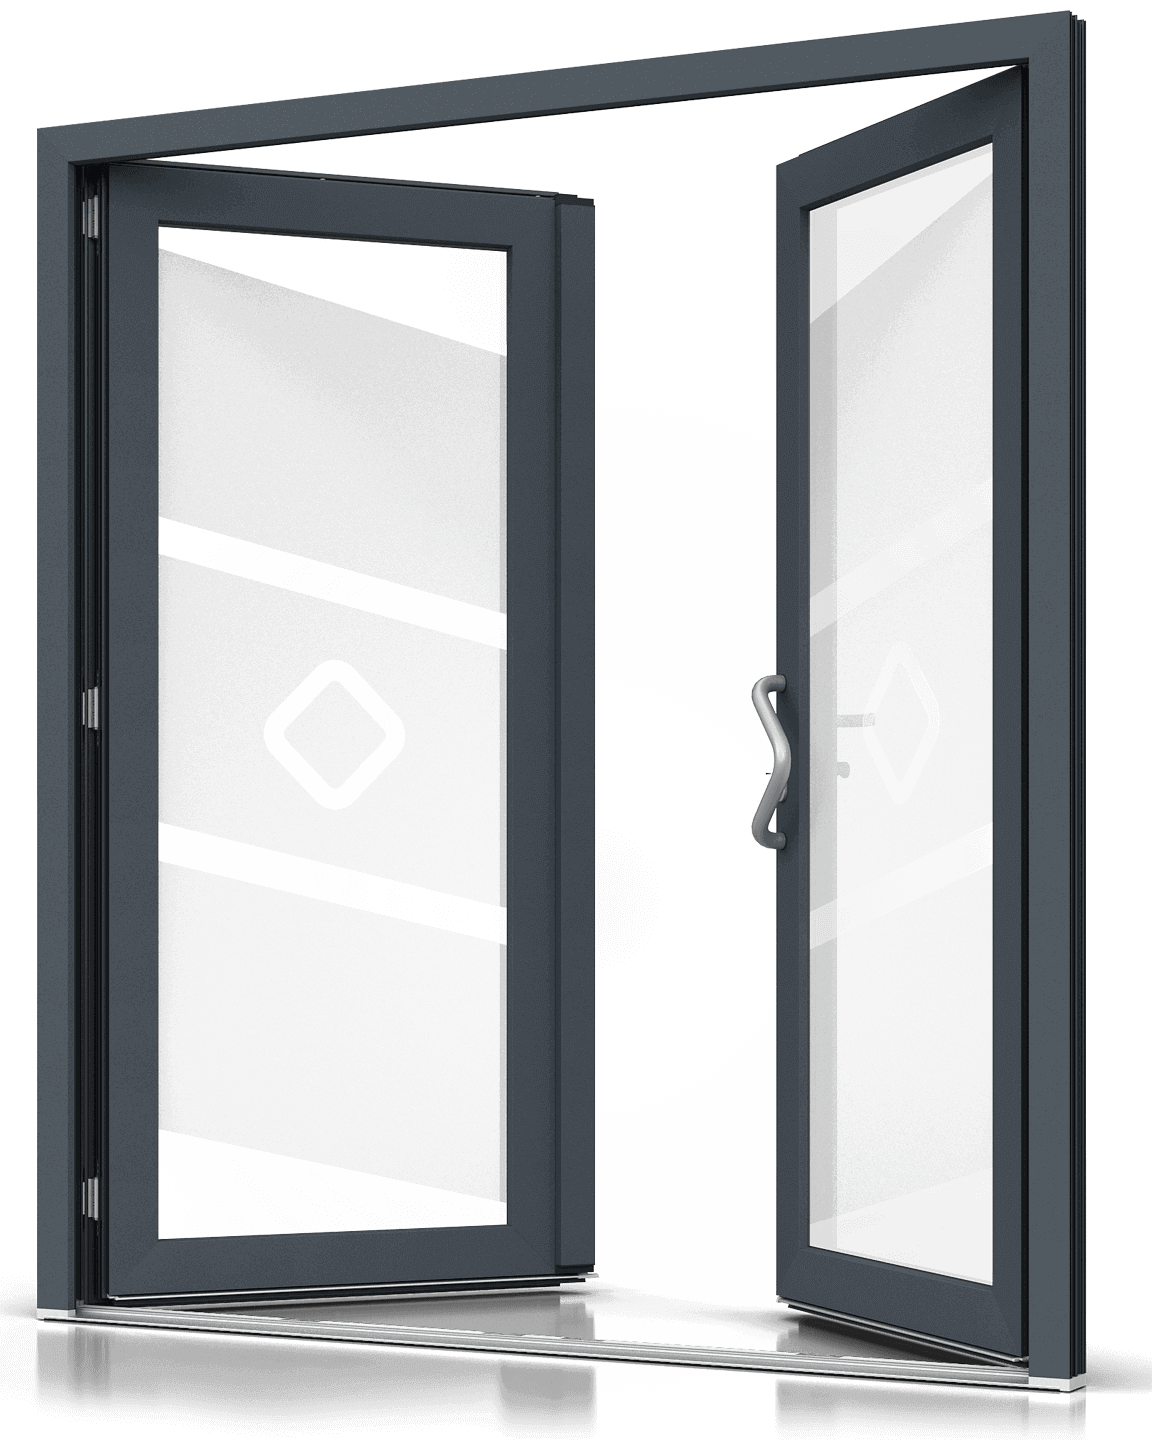 Puerta de entrada de PVC de doble hoja con vidrio esmerilado (arenado).